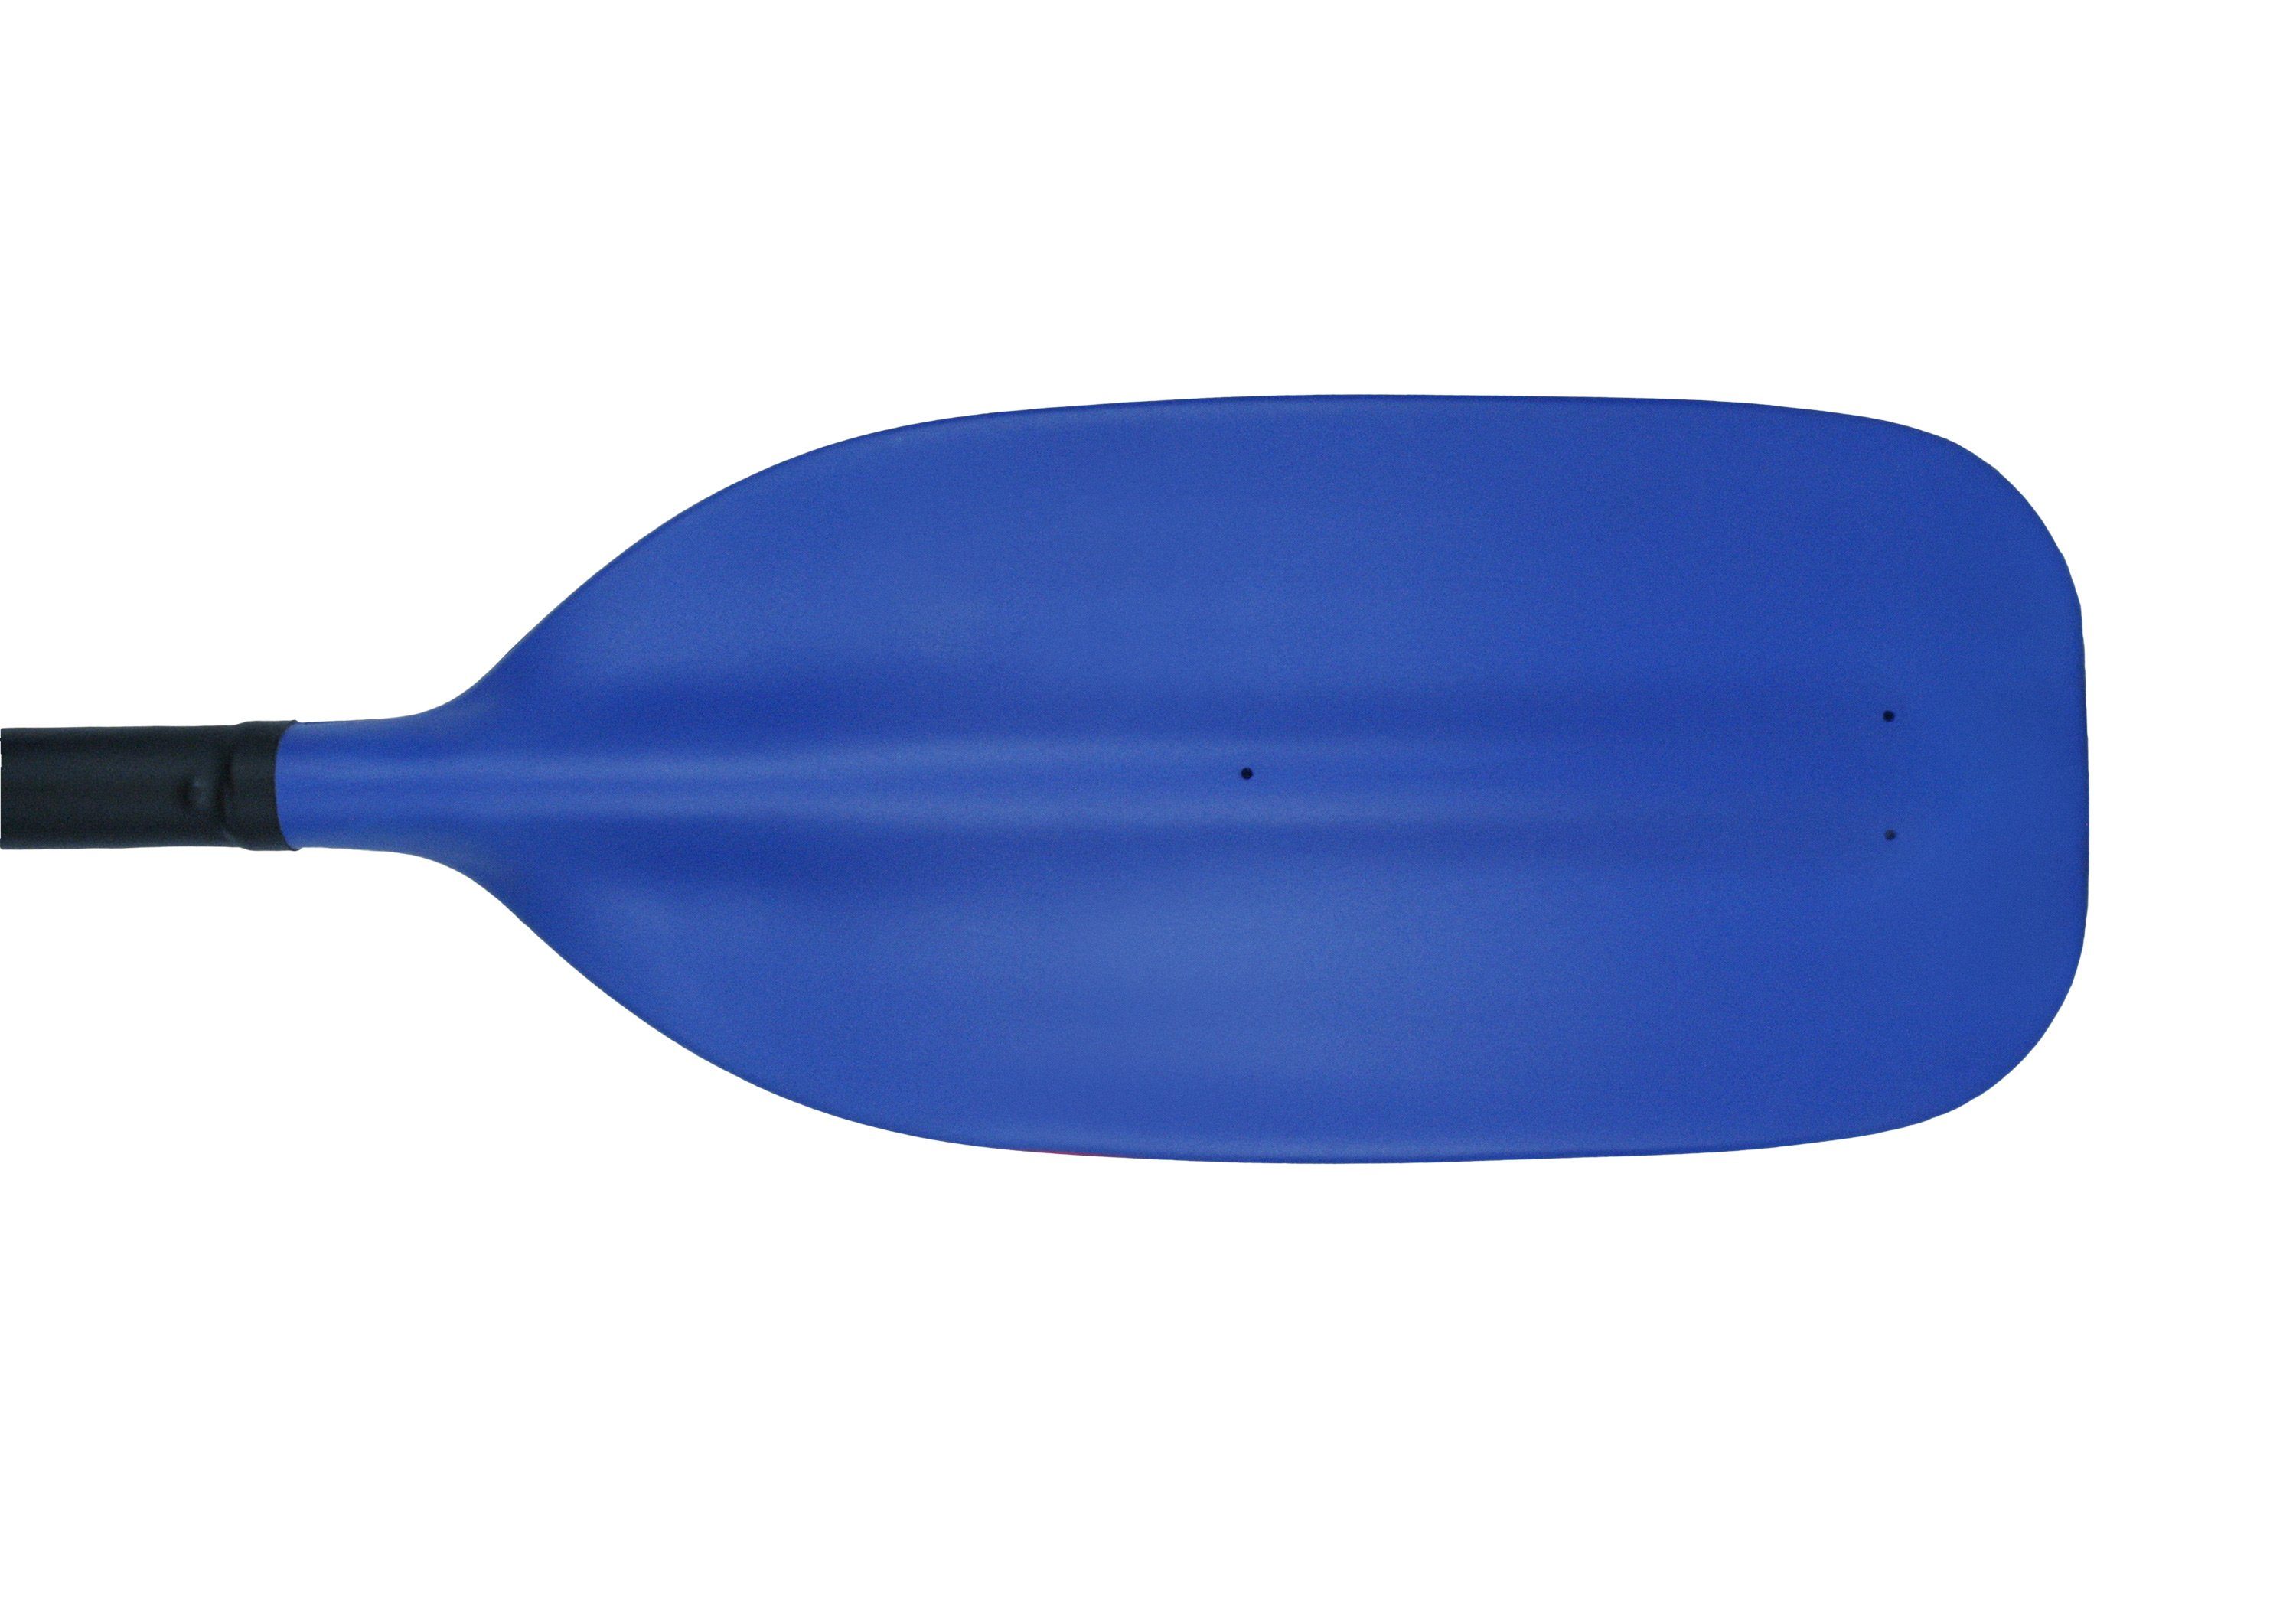 Kutech-Schlegel Whitewater Kombi Kajakpaddel, 4-teilig, 0-90° Schränkung und 230-250cm 2-Stechpaddel, wählbar Länge